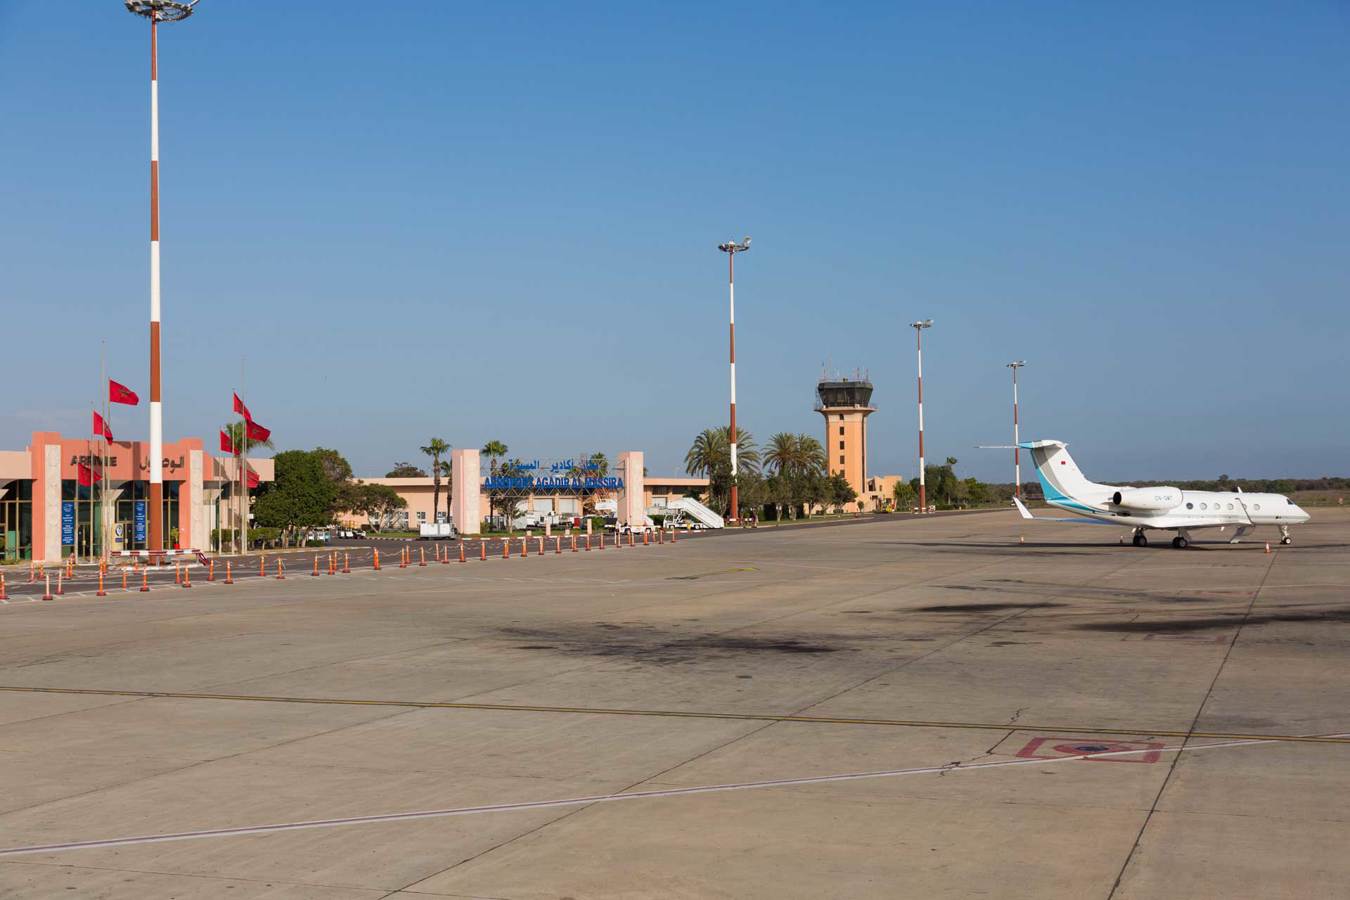 Aeroporto di Agadir